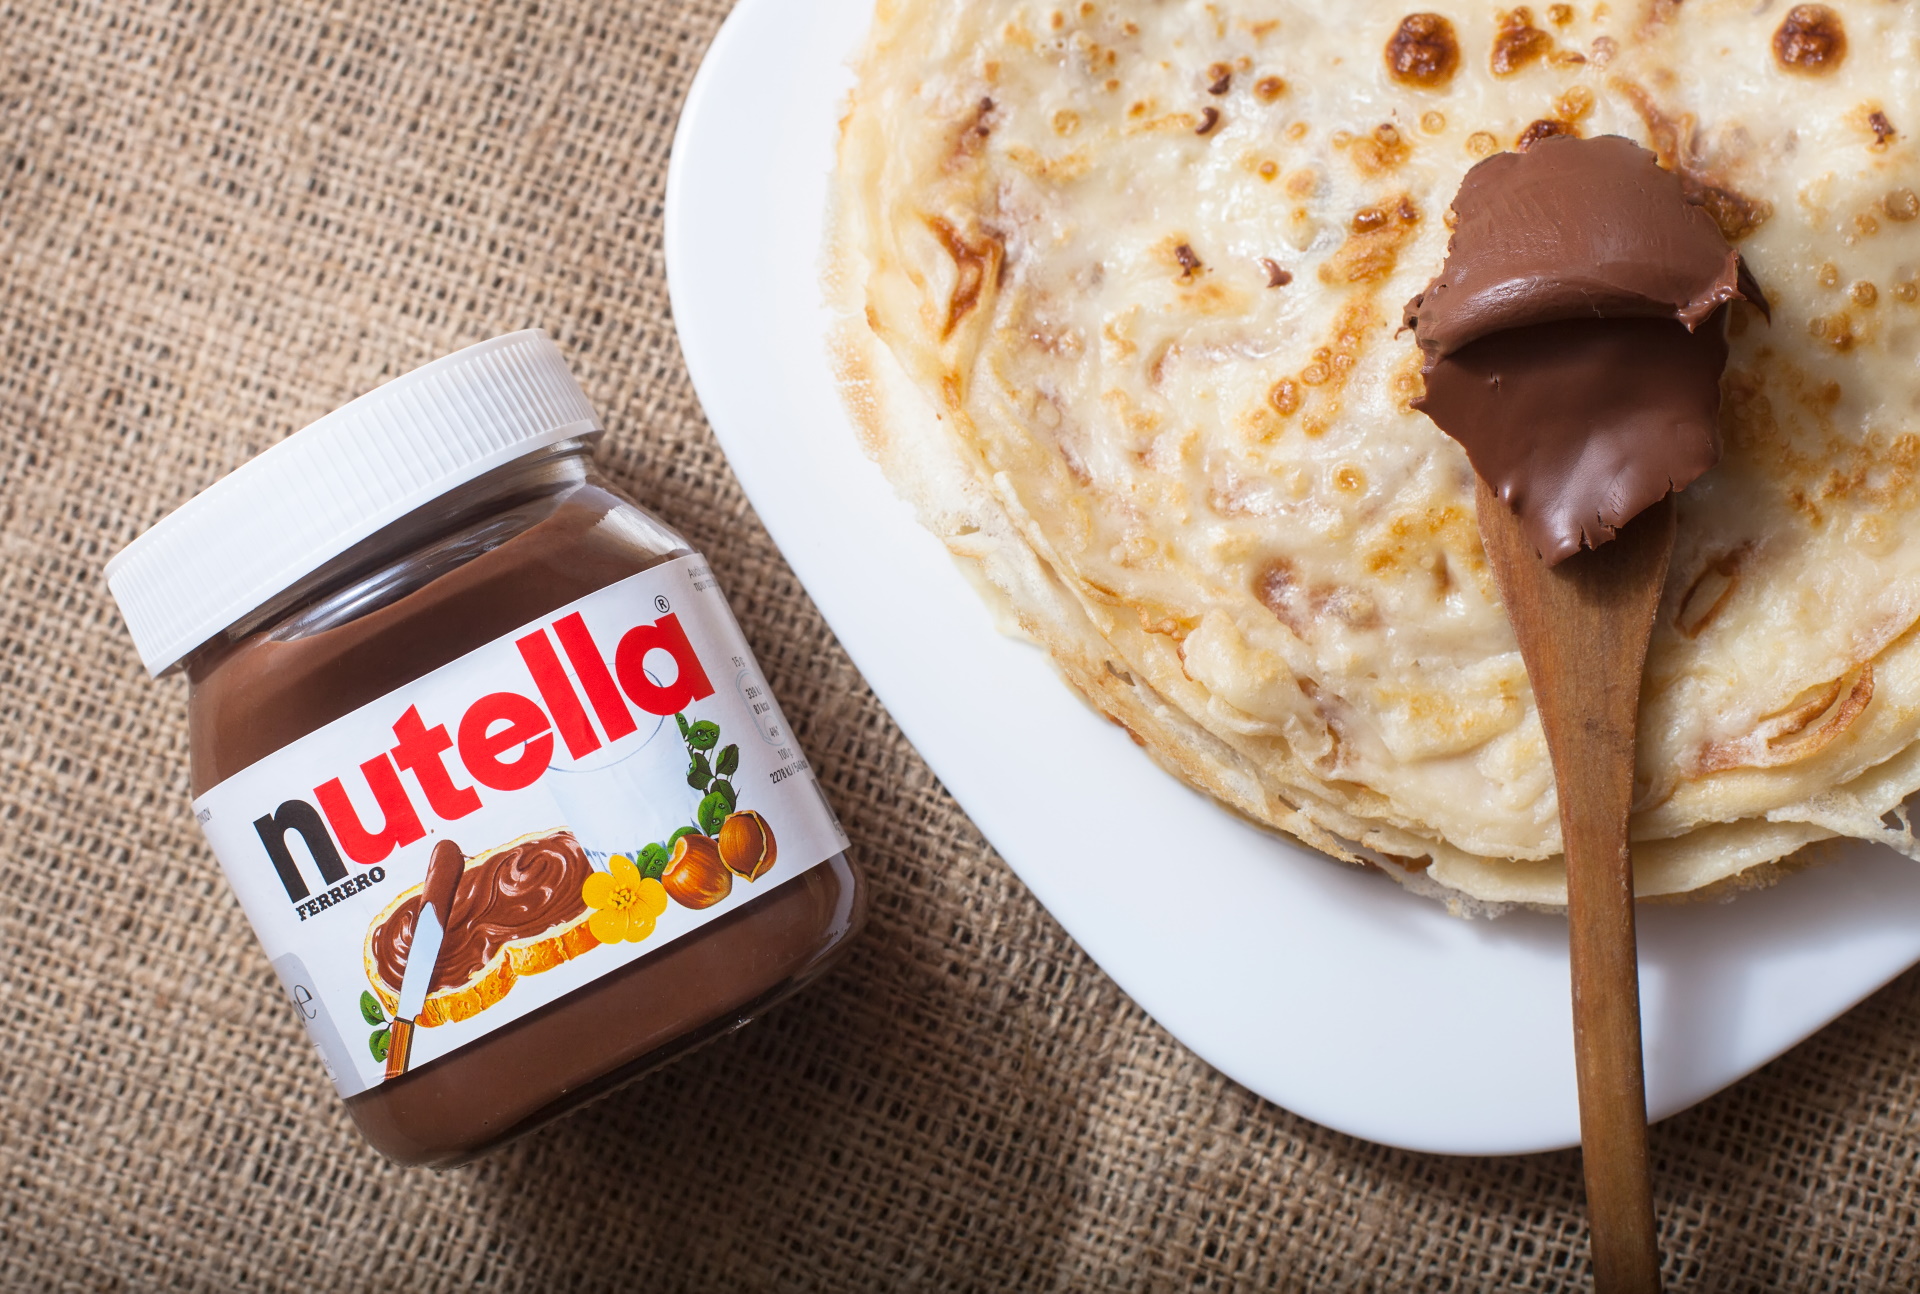 Süßes Reisevergnügen – Nutella Hotel eröffnet in Kalifornien - Blog